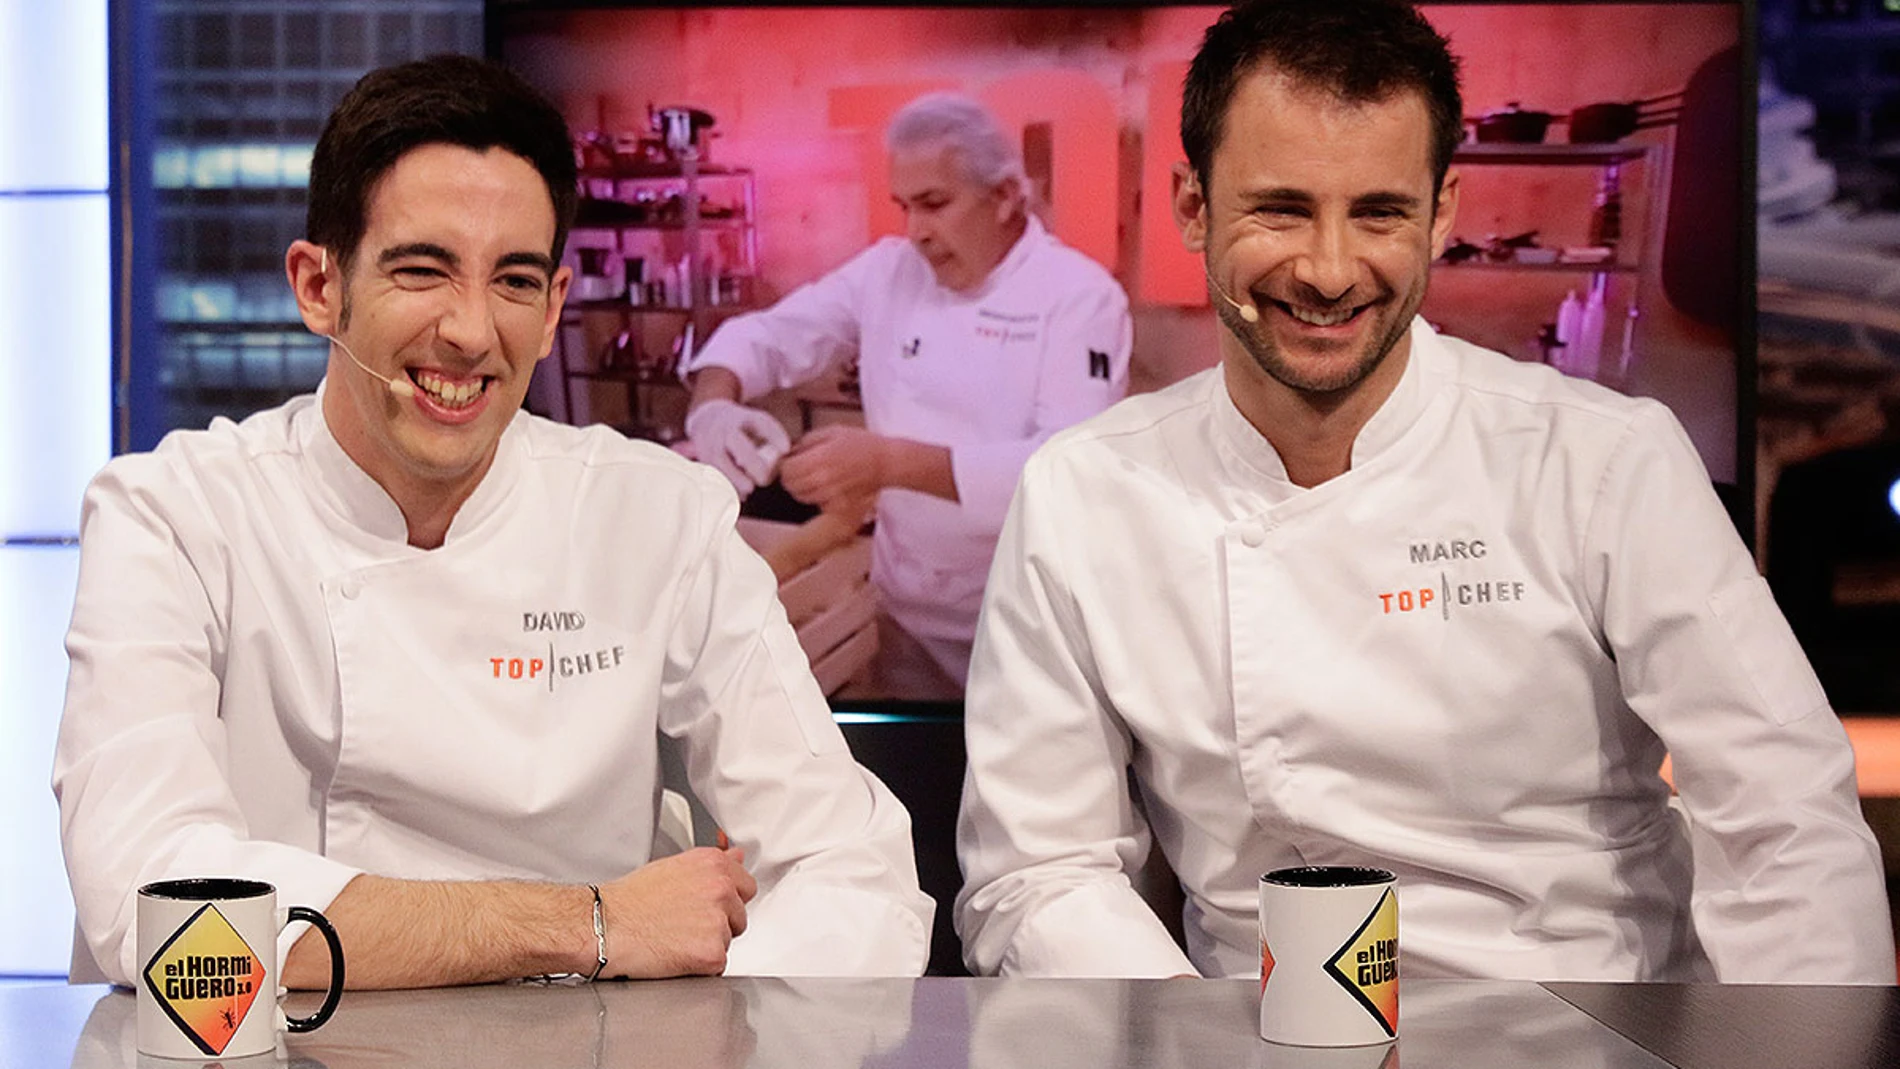 Marc y David, finalistas de Top Chef en El Hormiguero 3.0